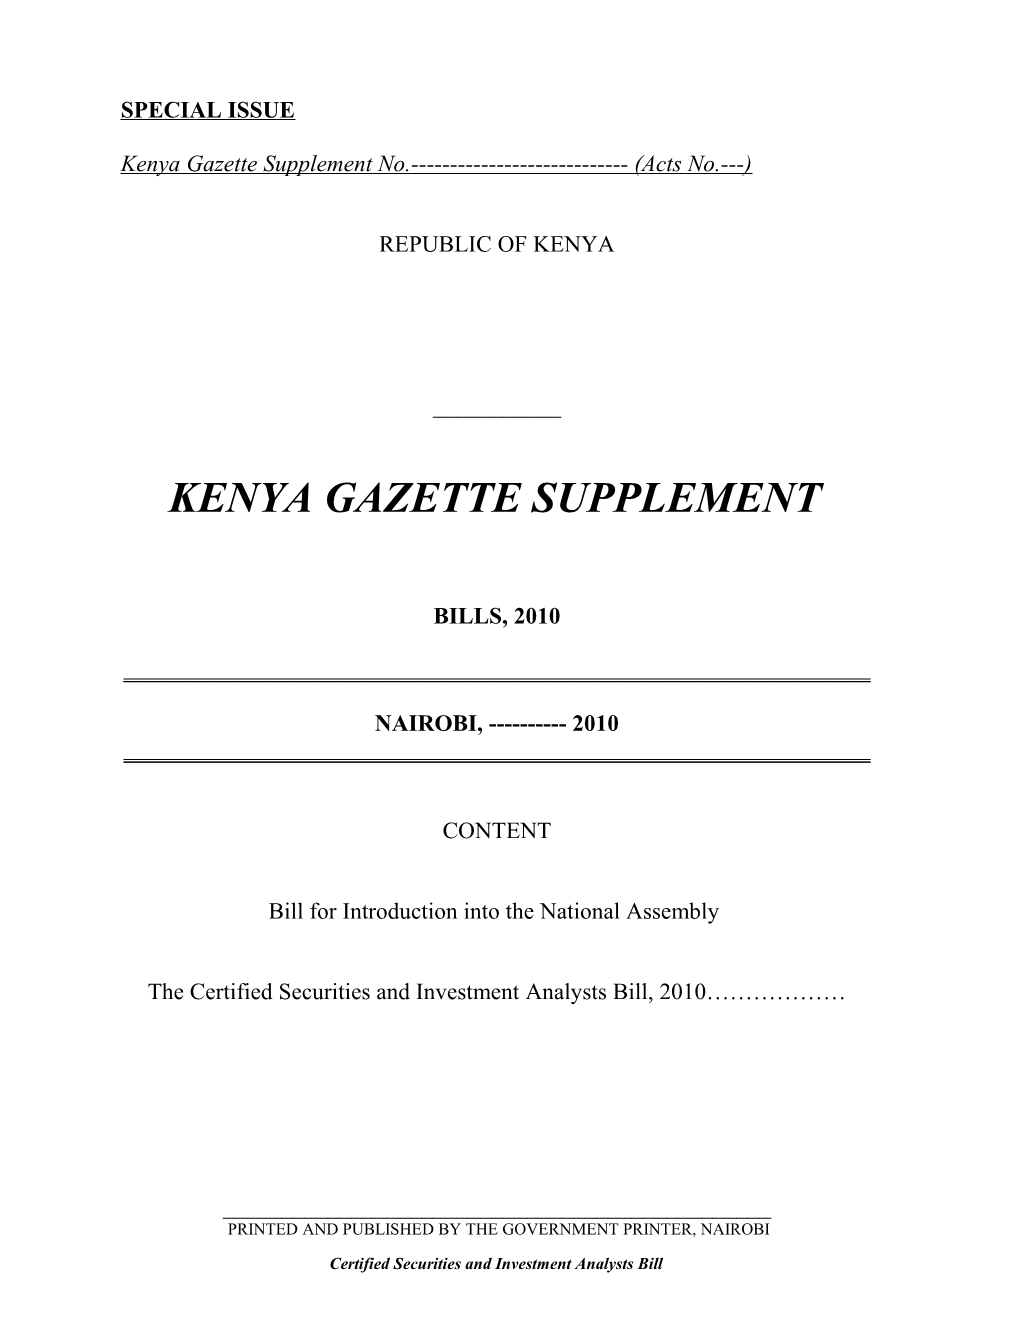 Kenya Gazette Supplement No. (Acts No. )